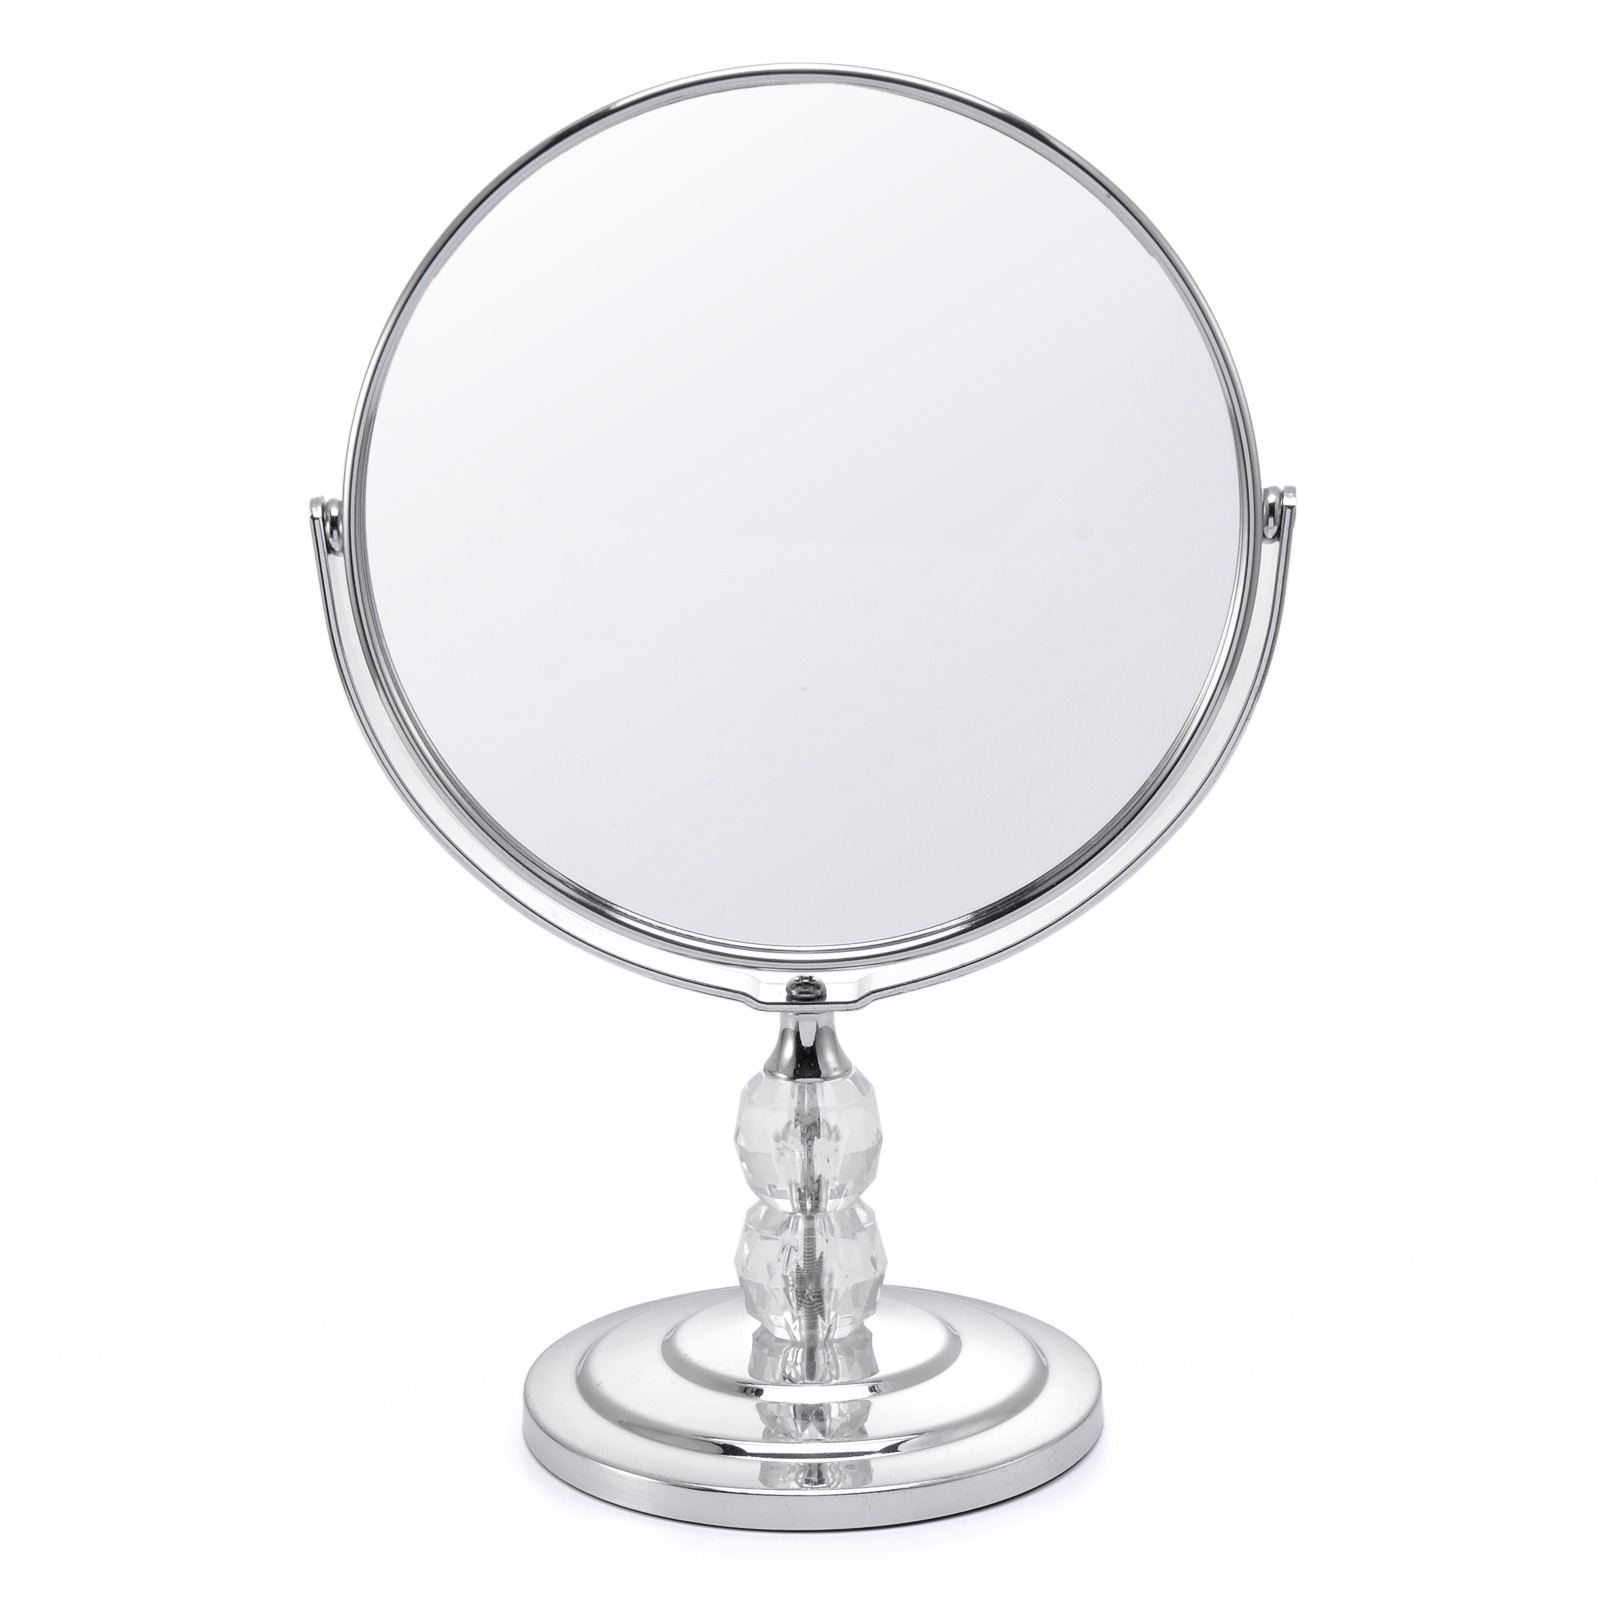 放大镜子桌面台式化妆镜圆形金属旋转台镜工厂定做网红化妆美容镜